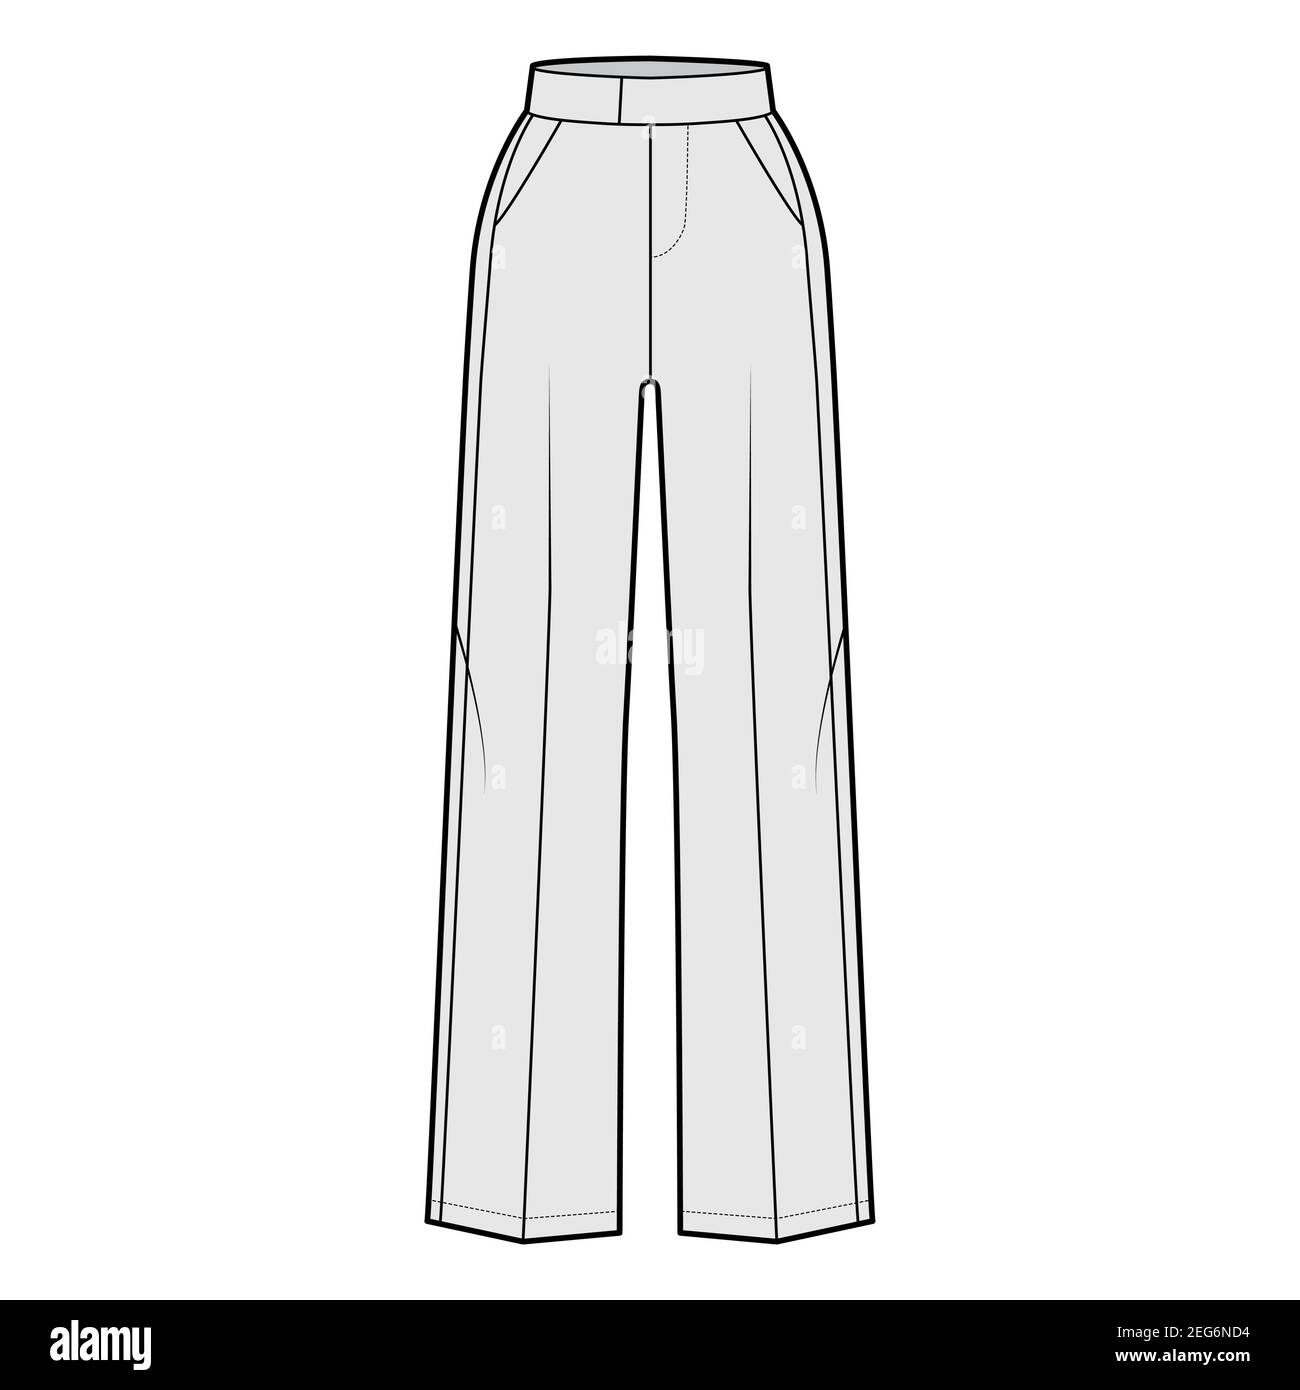 Pantalon tuxedo technique mode illustration avec taille normale étendue,  taille haute, pleine longueur, poches fines, rayures satinées sur le côté.  Modèle de bas de pantalon plat, gris. Maquette CAD pour femmes et